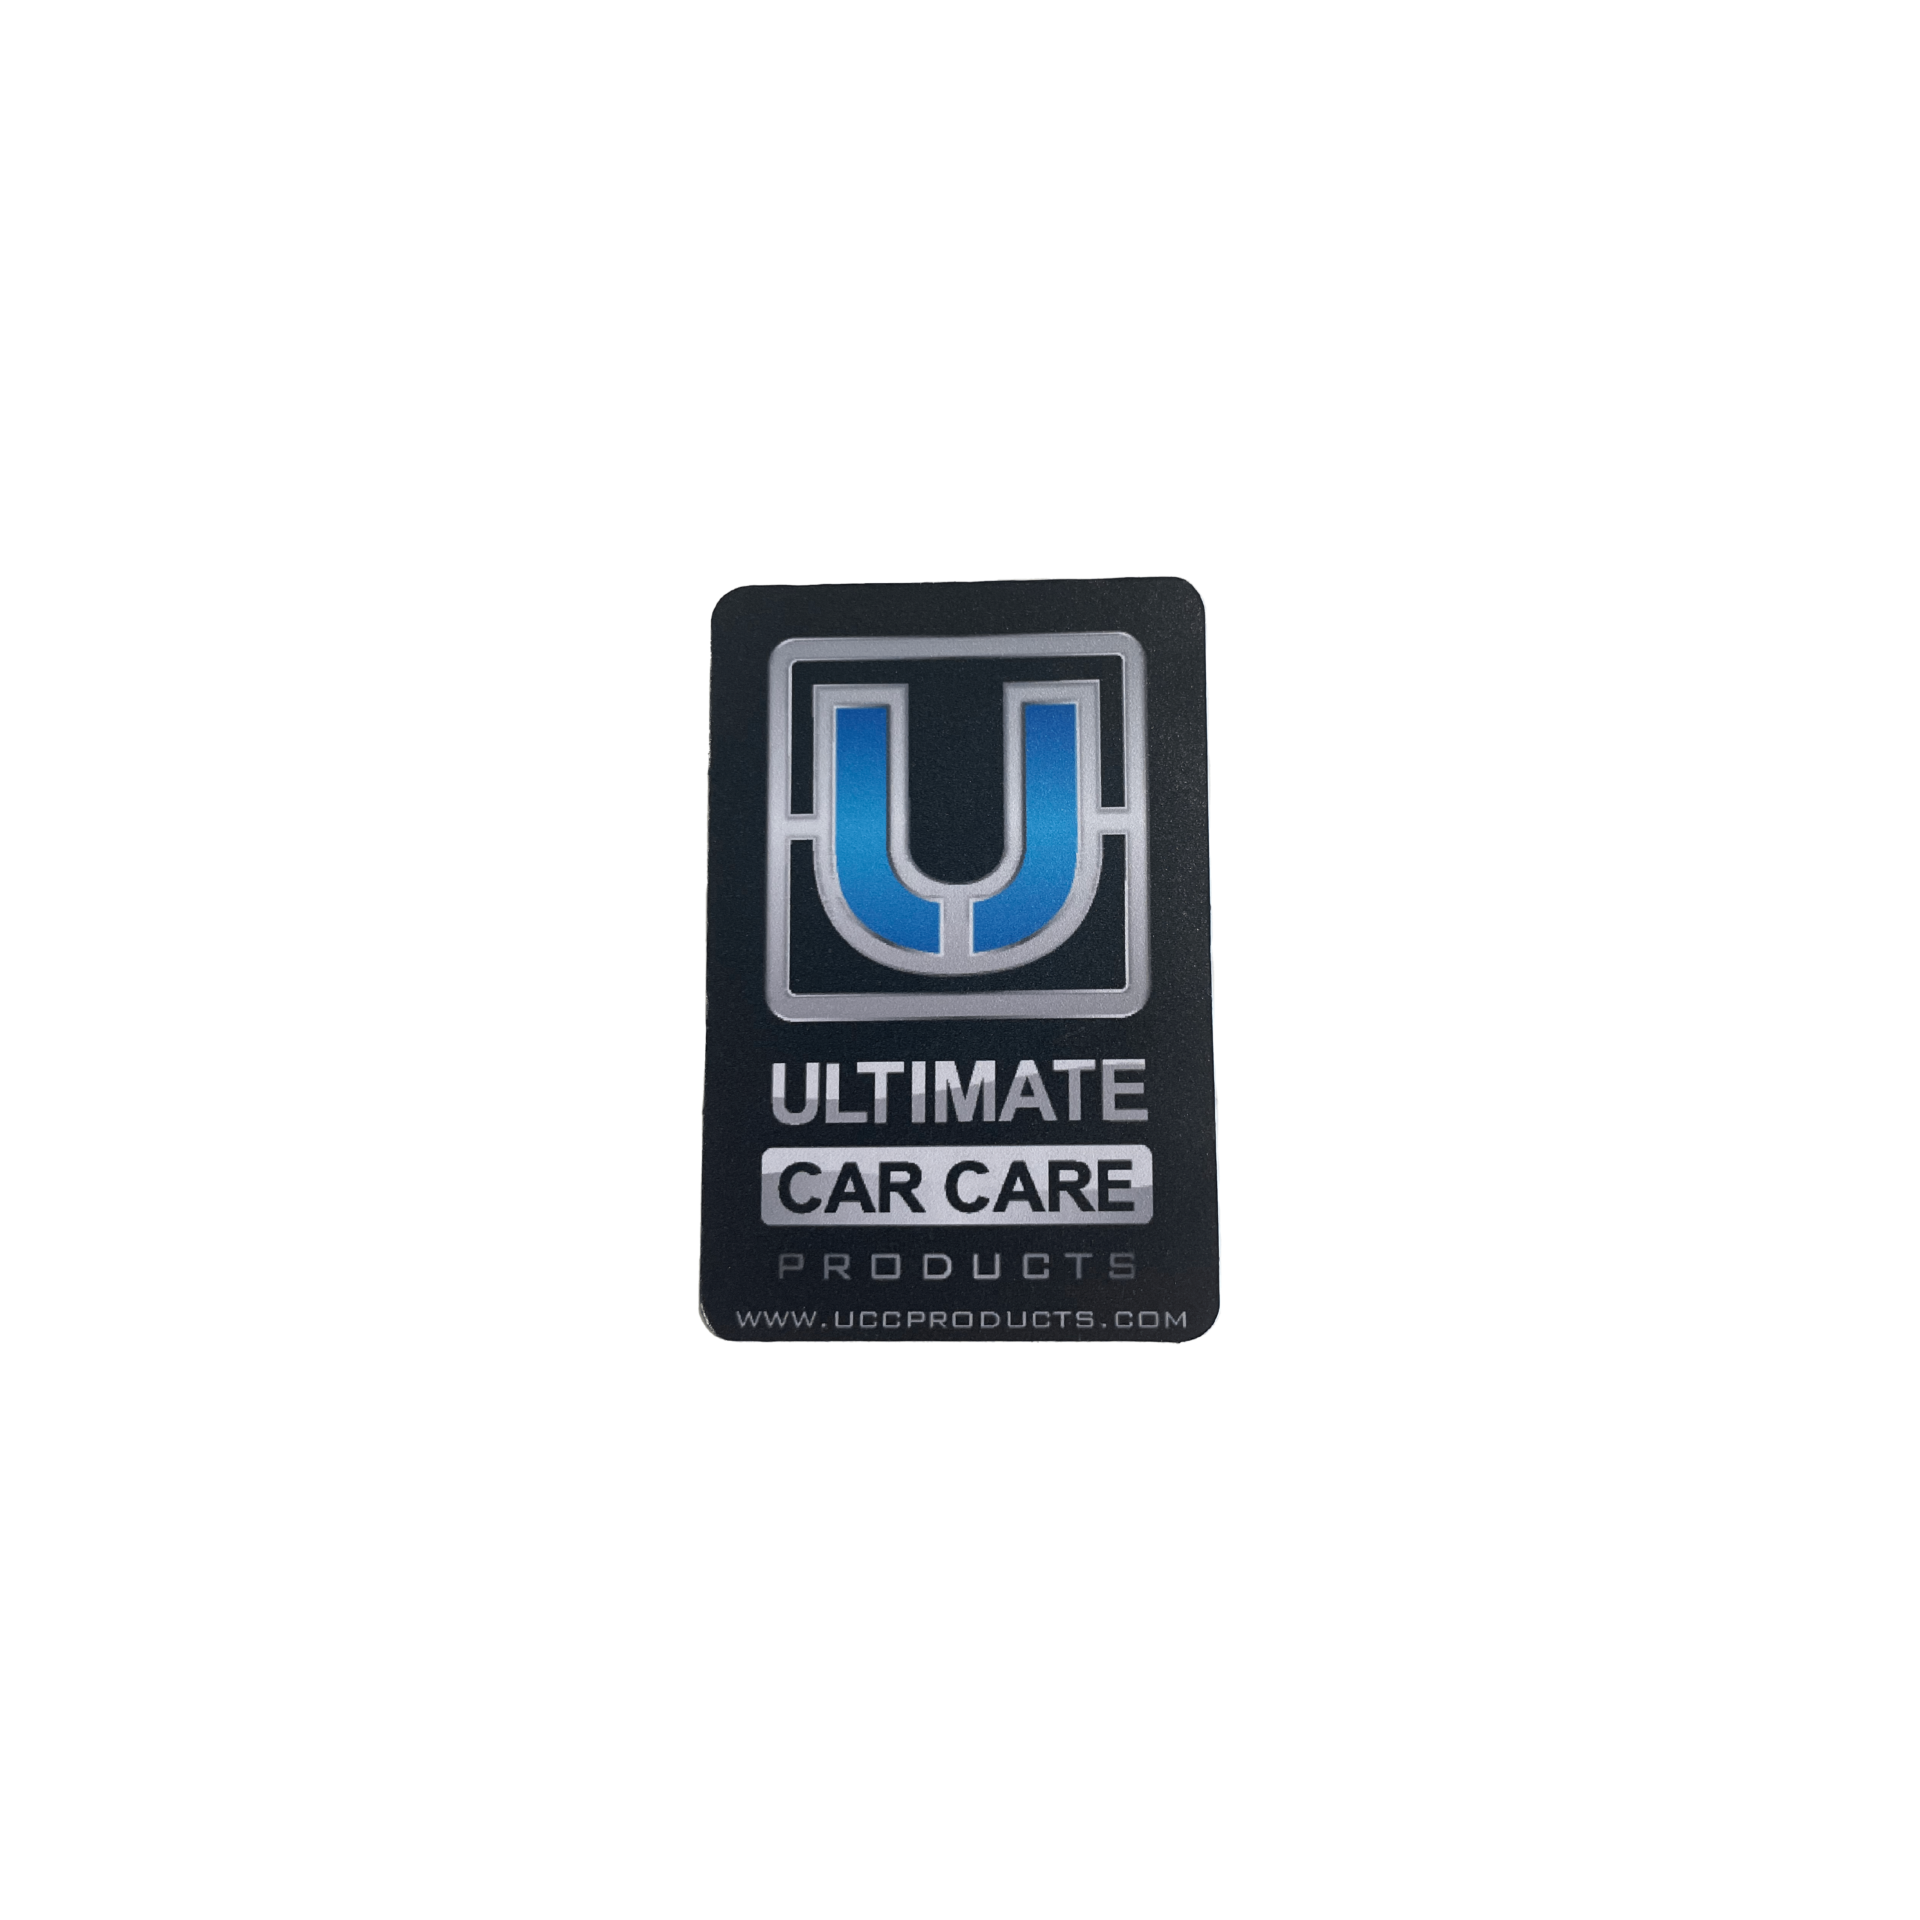 Dekal Ultimate Car Care Productstegory